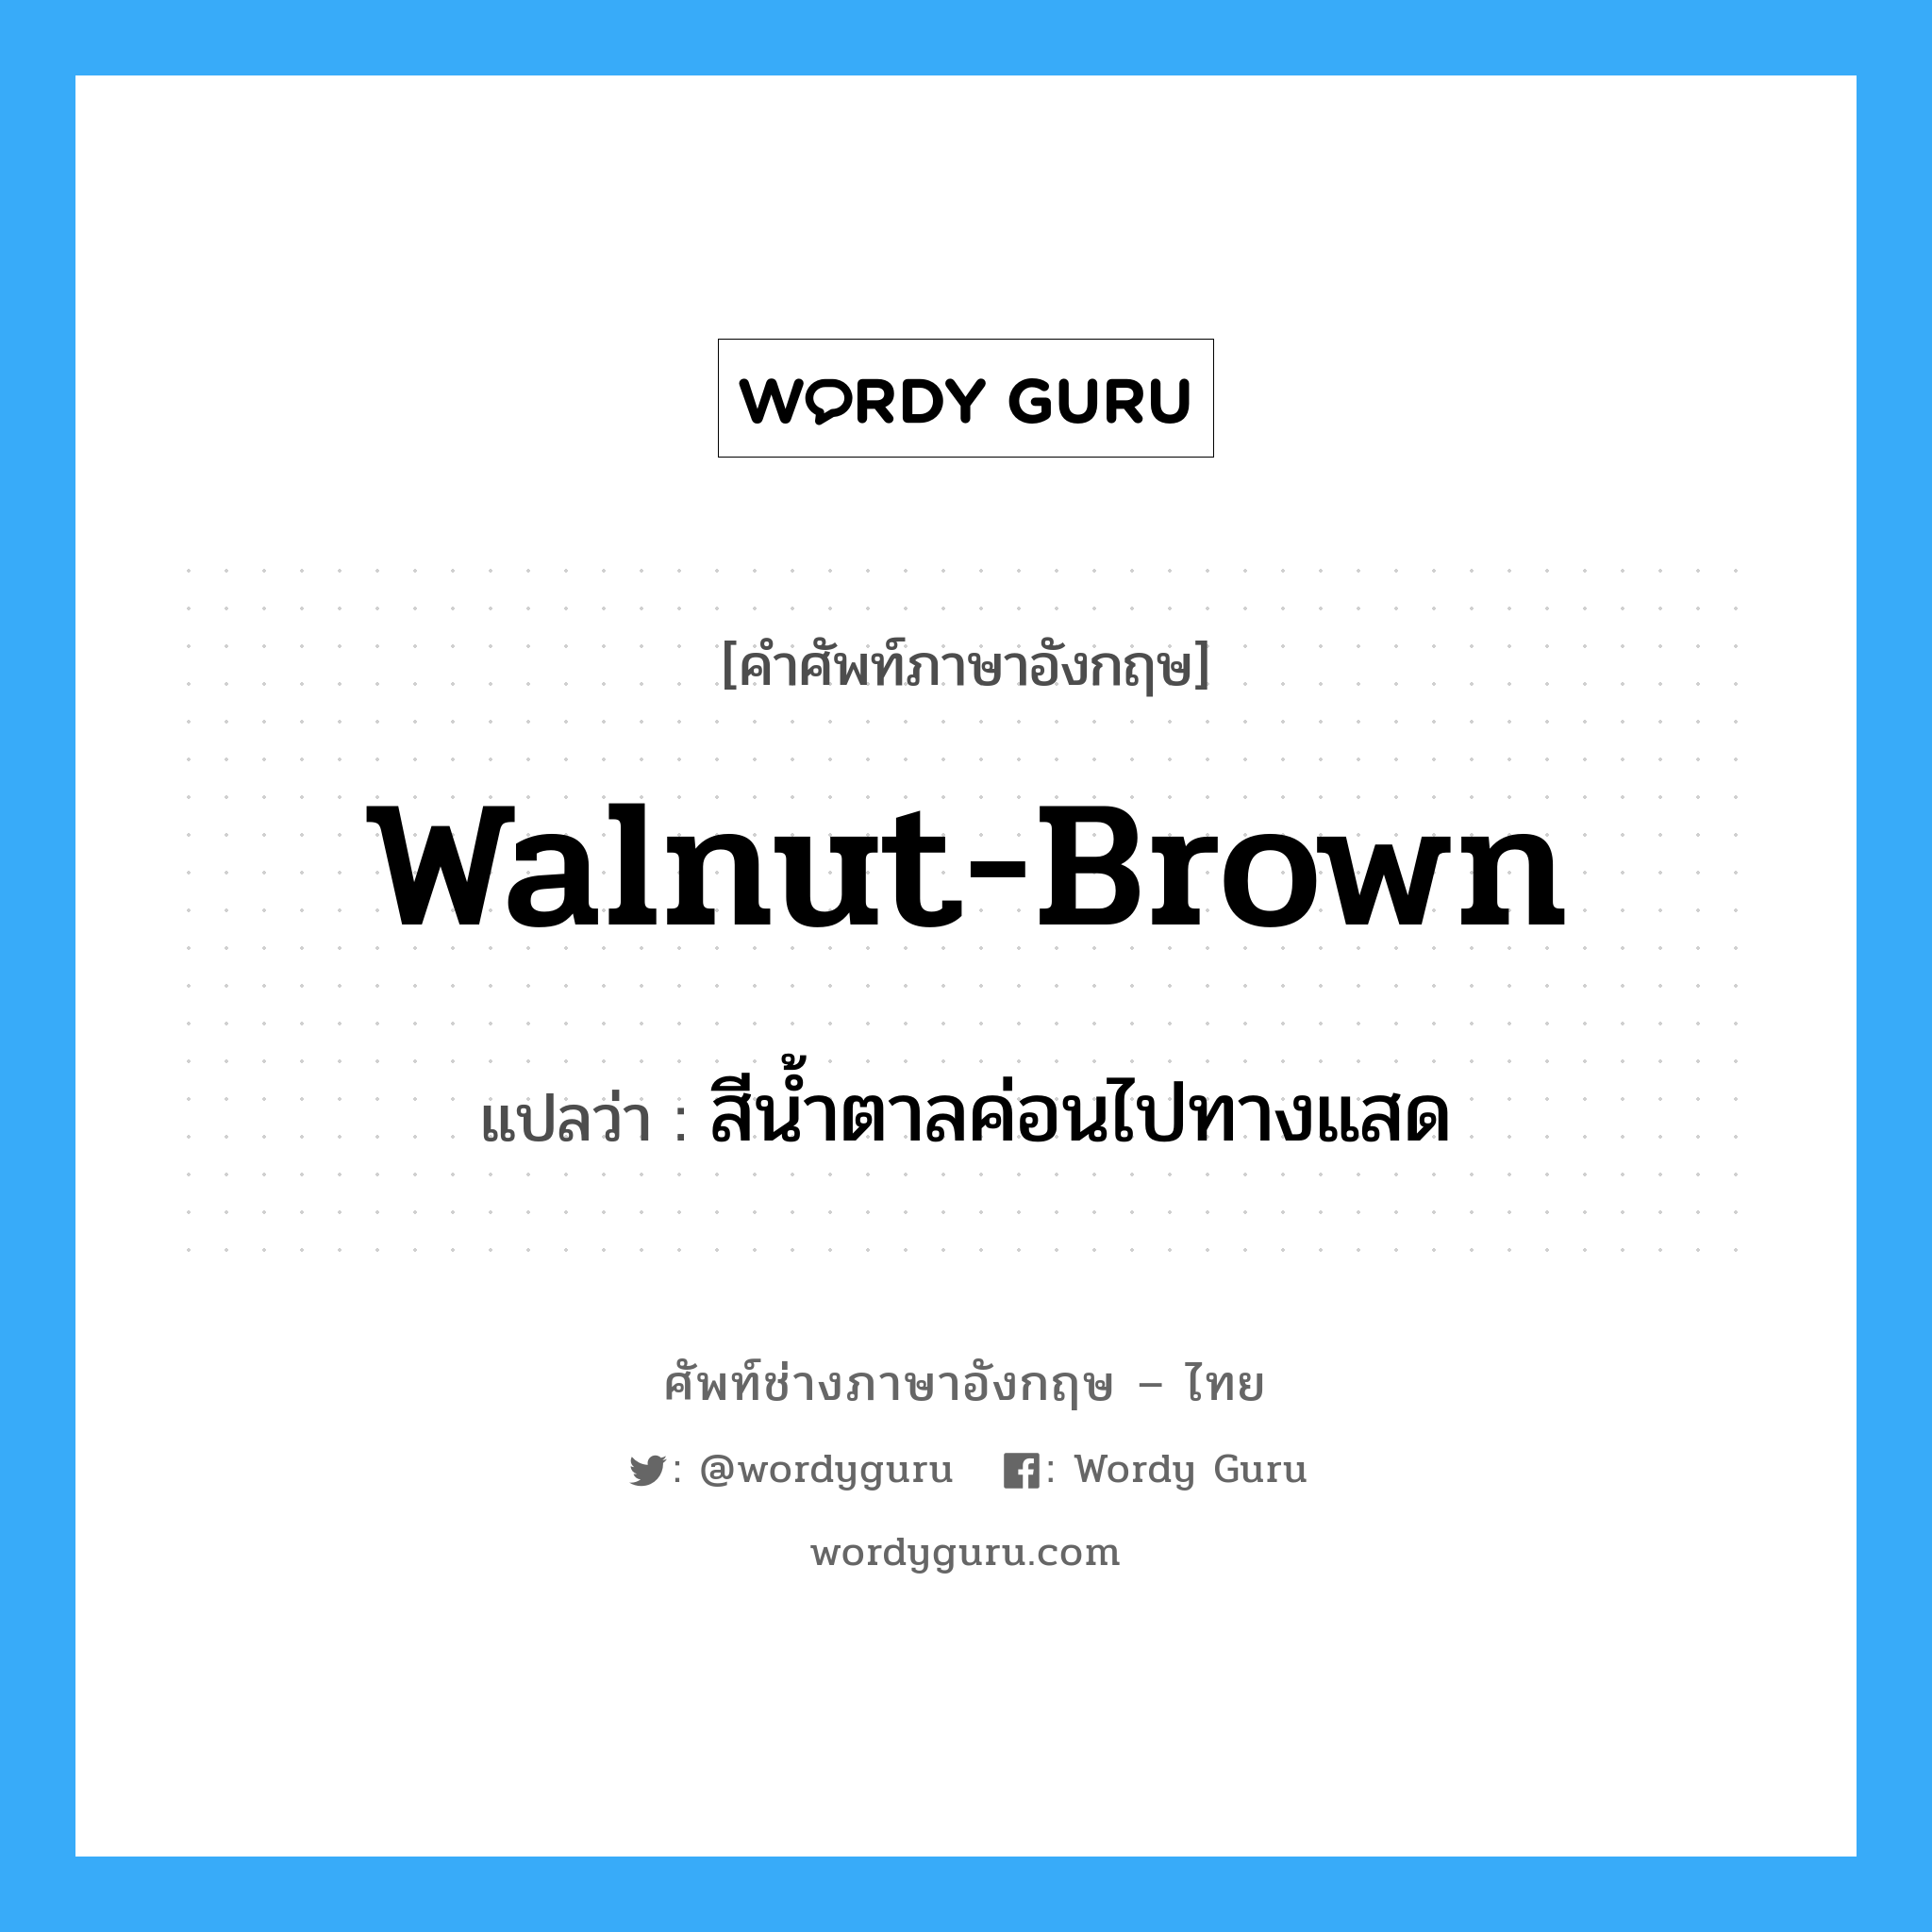 walnut-brown แปลว่า?, คำศัพท์ช่างภาษาอังกฤษ - ไทย walnut-brown คำศัพท์ภาษาอังกฤษ walnut-brown แปลว่า สีน้ำตาลค่อนไปทางแสด